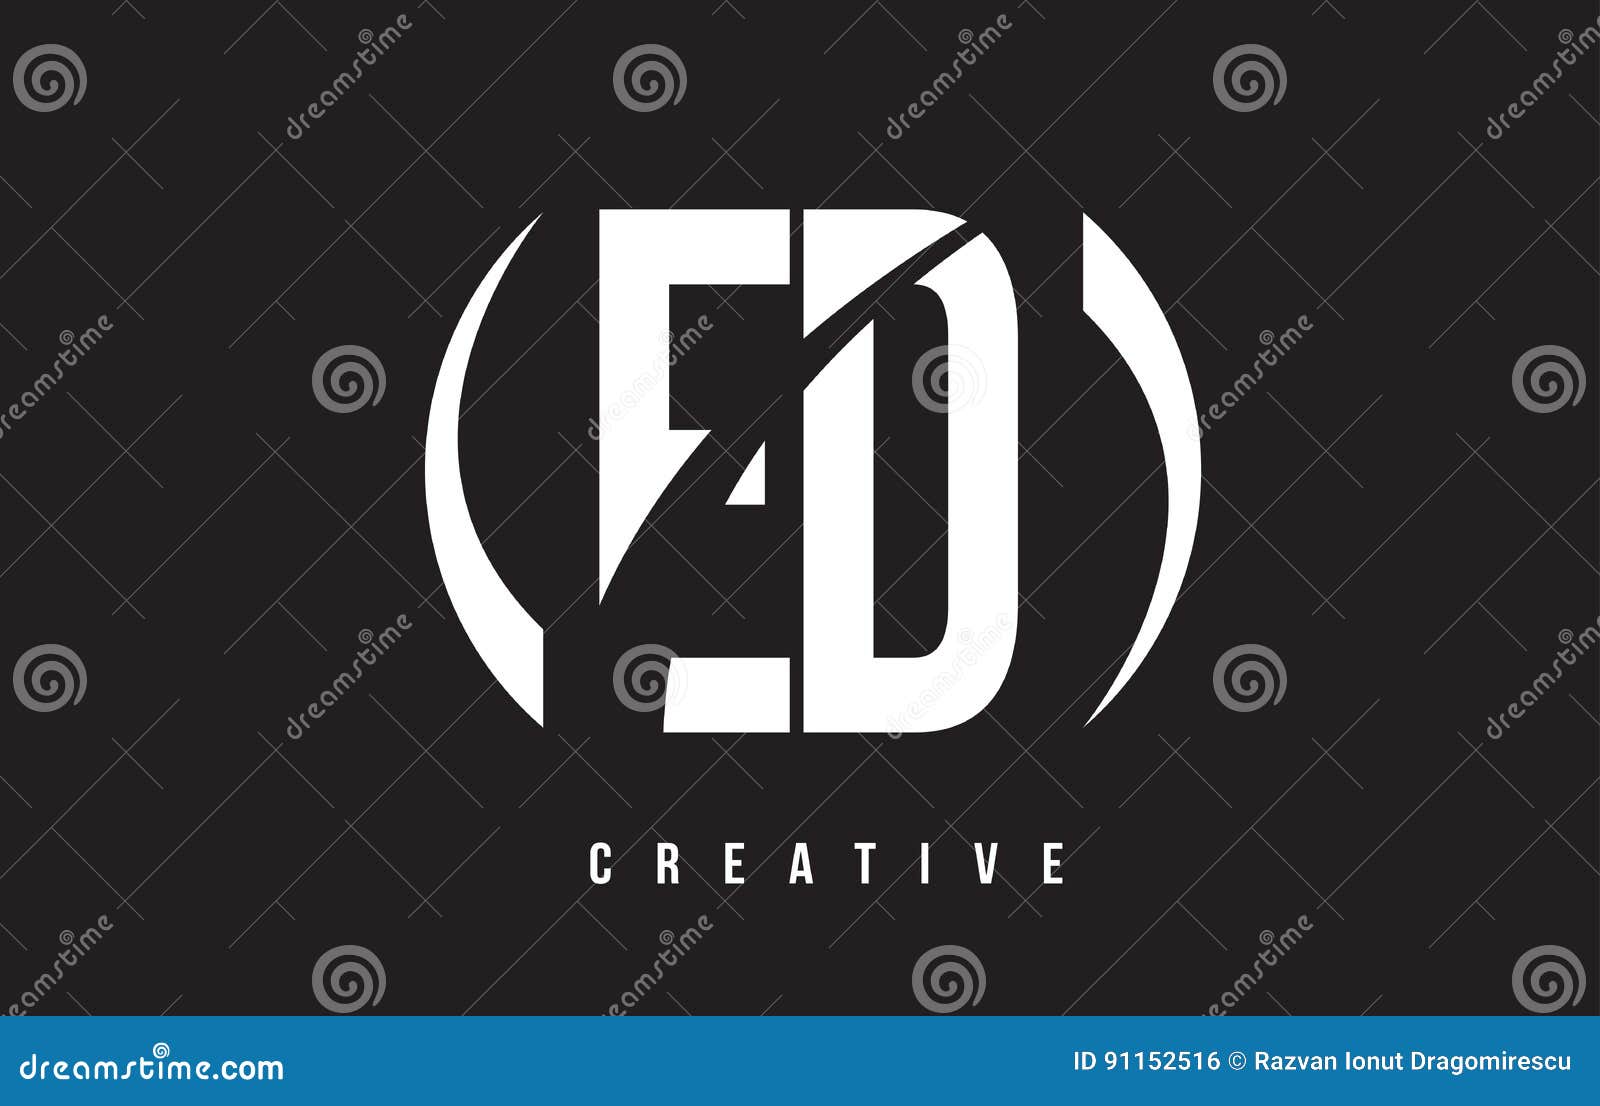 ed e d white letter logo  with black background.